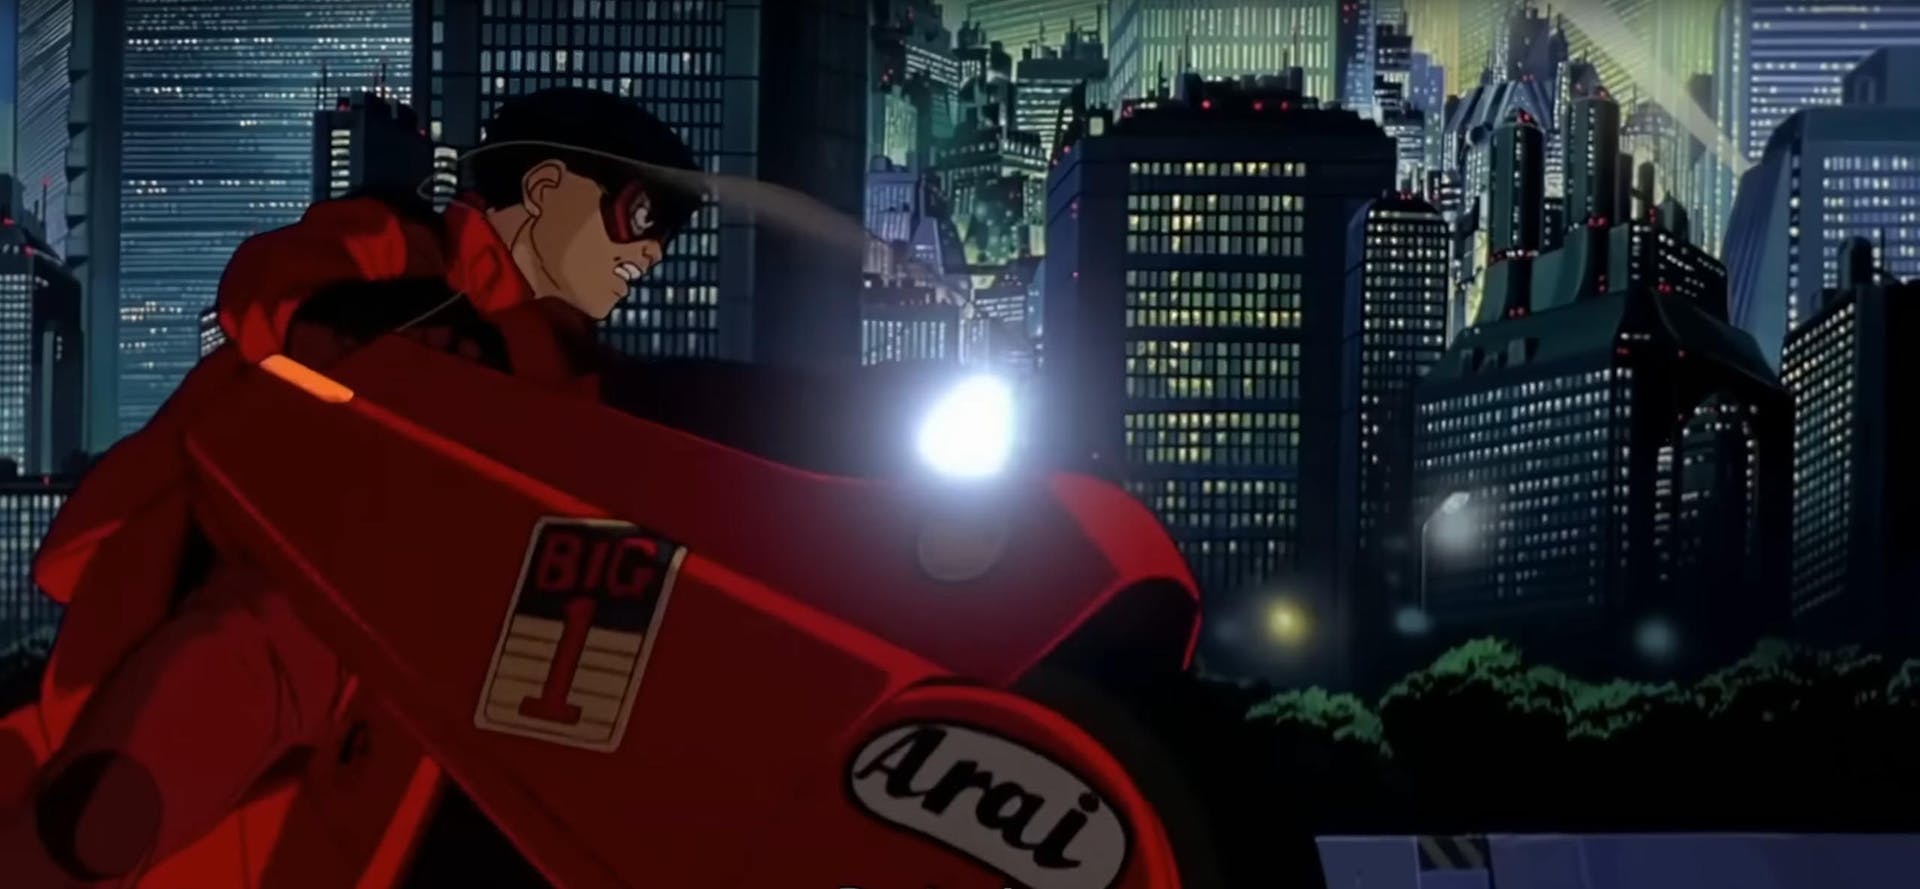 The cyberpunk classic that changed animation, "Akira".